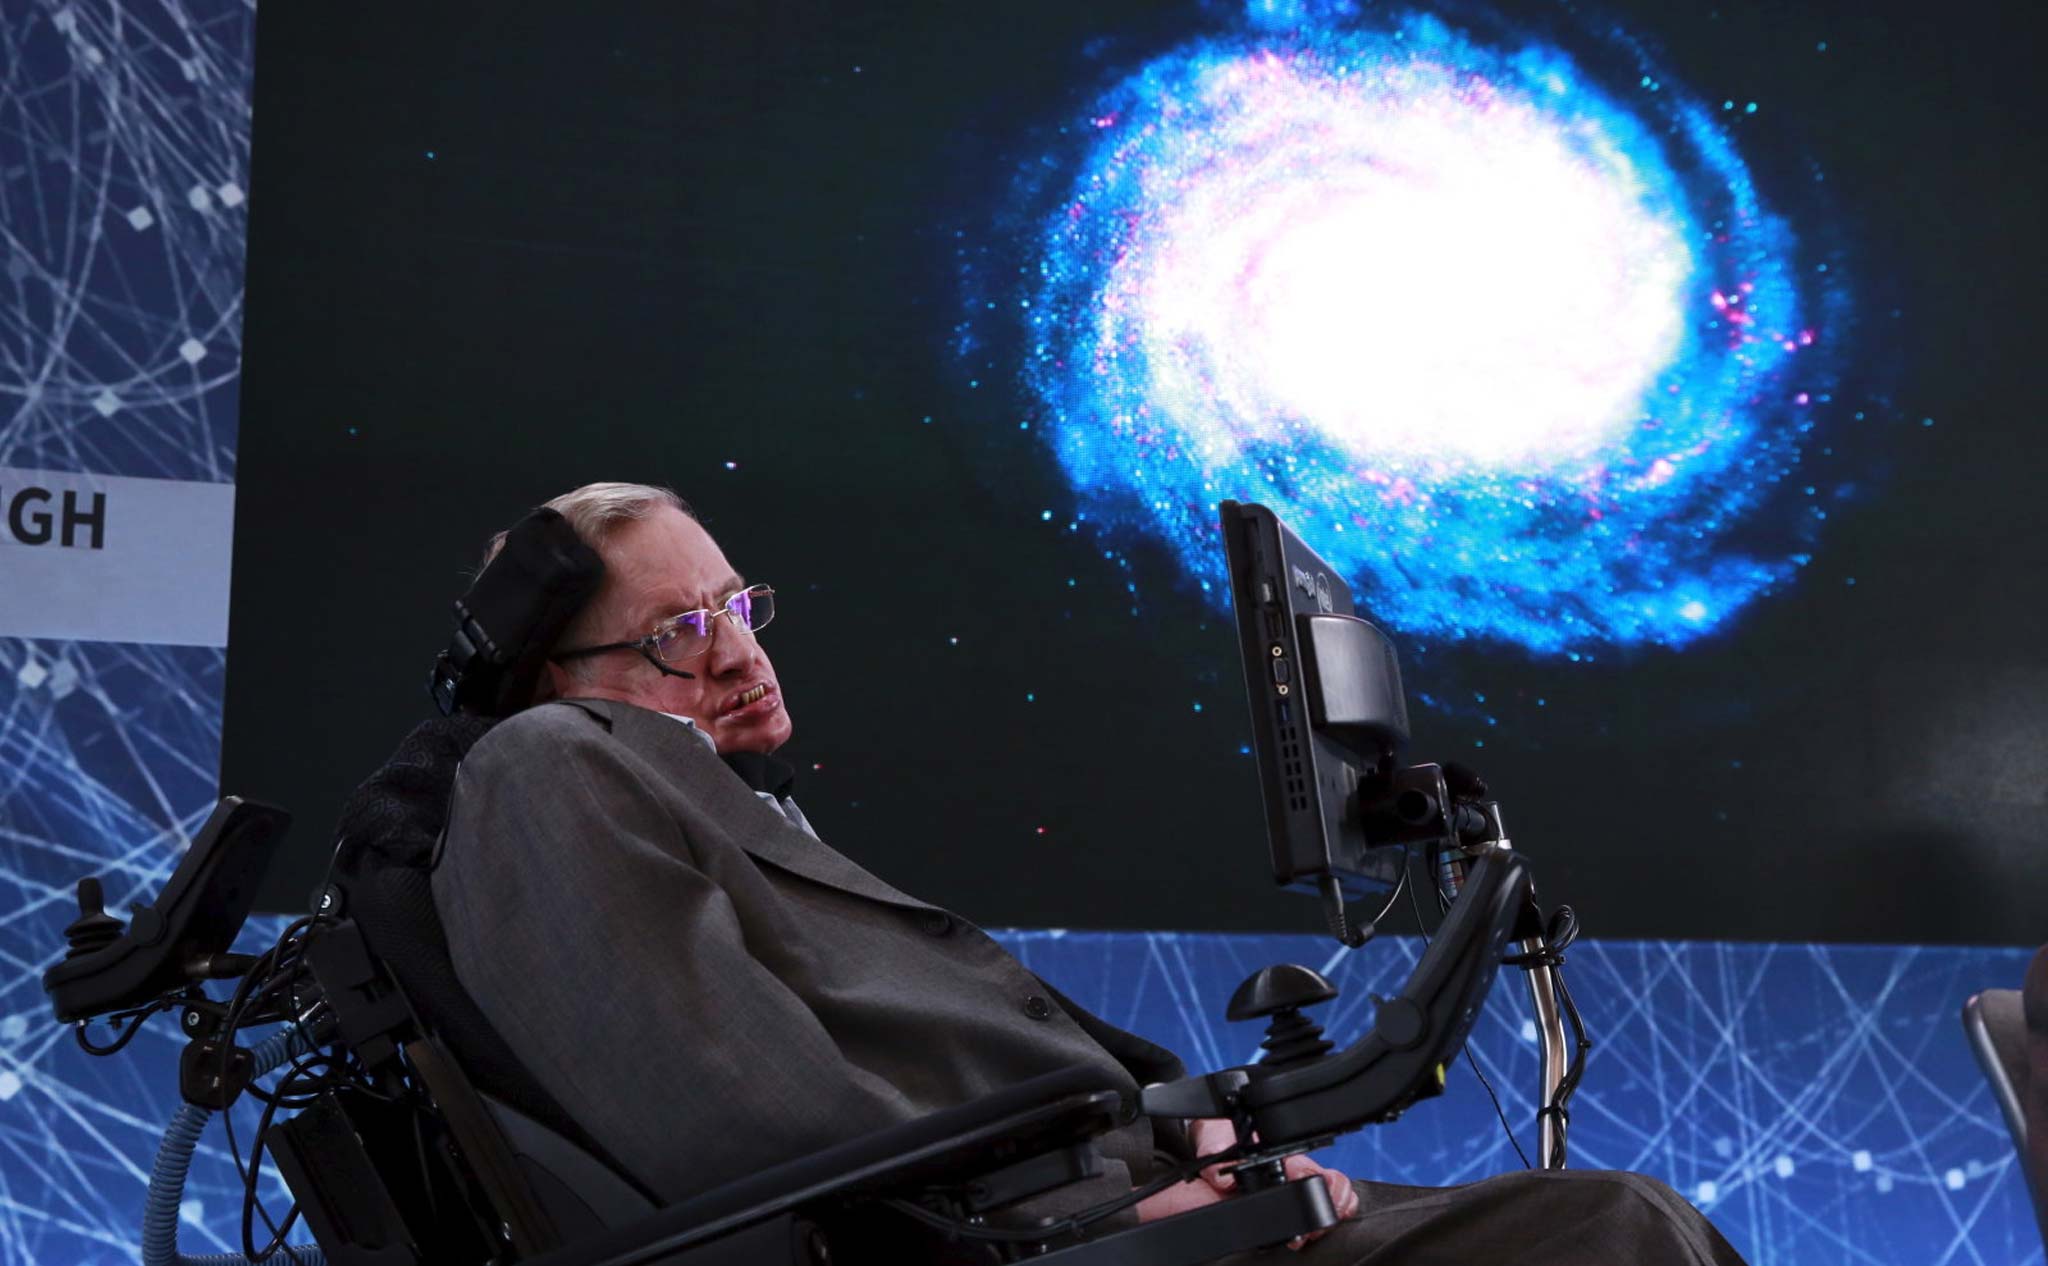 Giọng nói của giáo sư Hawking được phát tới lỗ đen, du hành hàng thiên niên kỷ trong vũ trụ